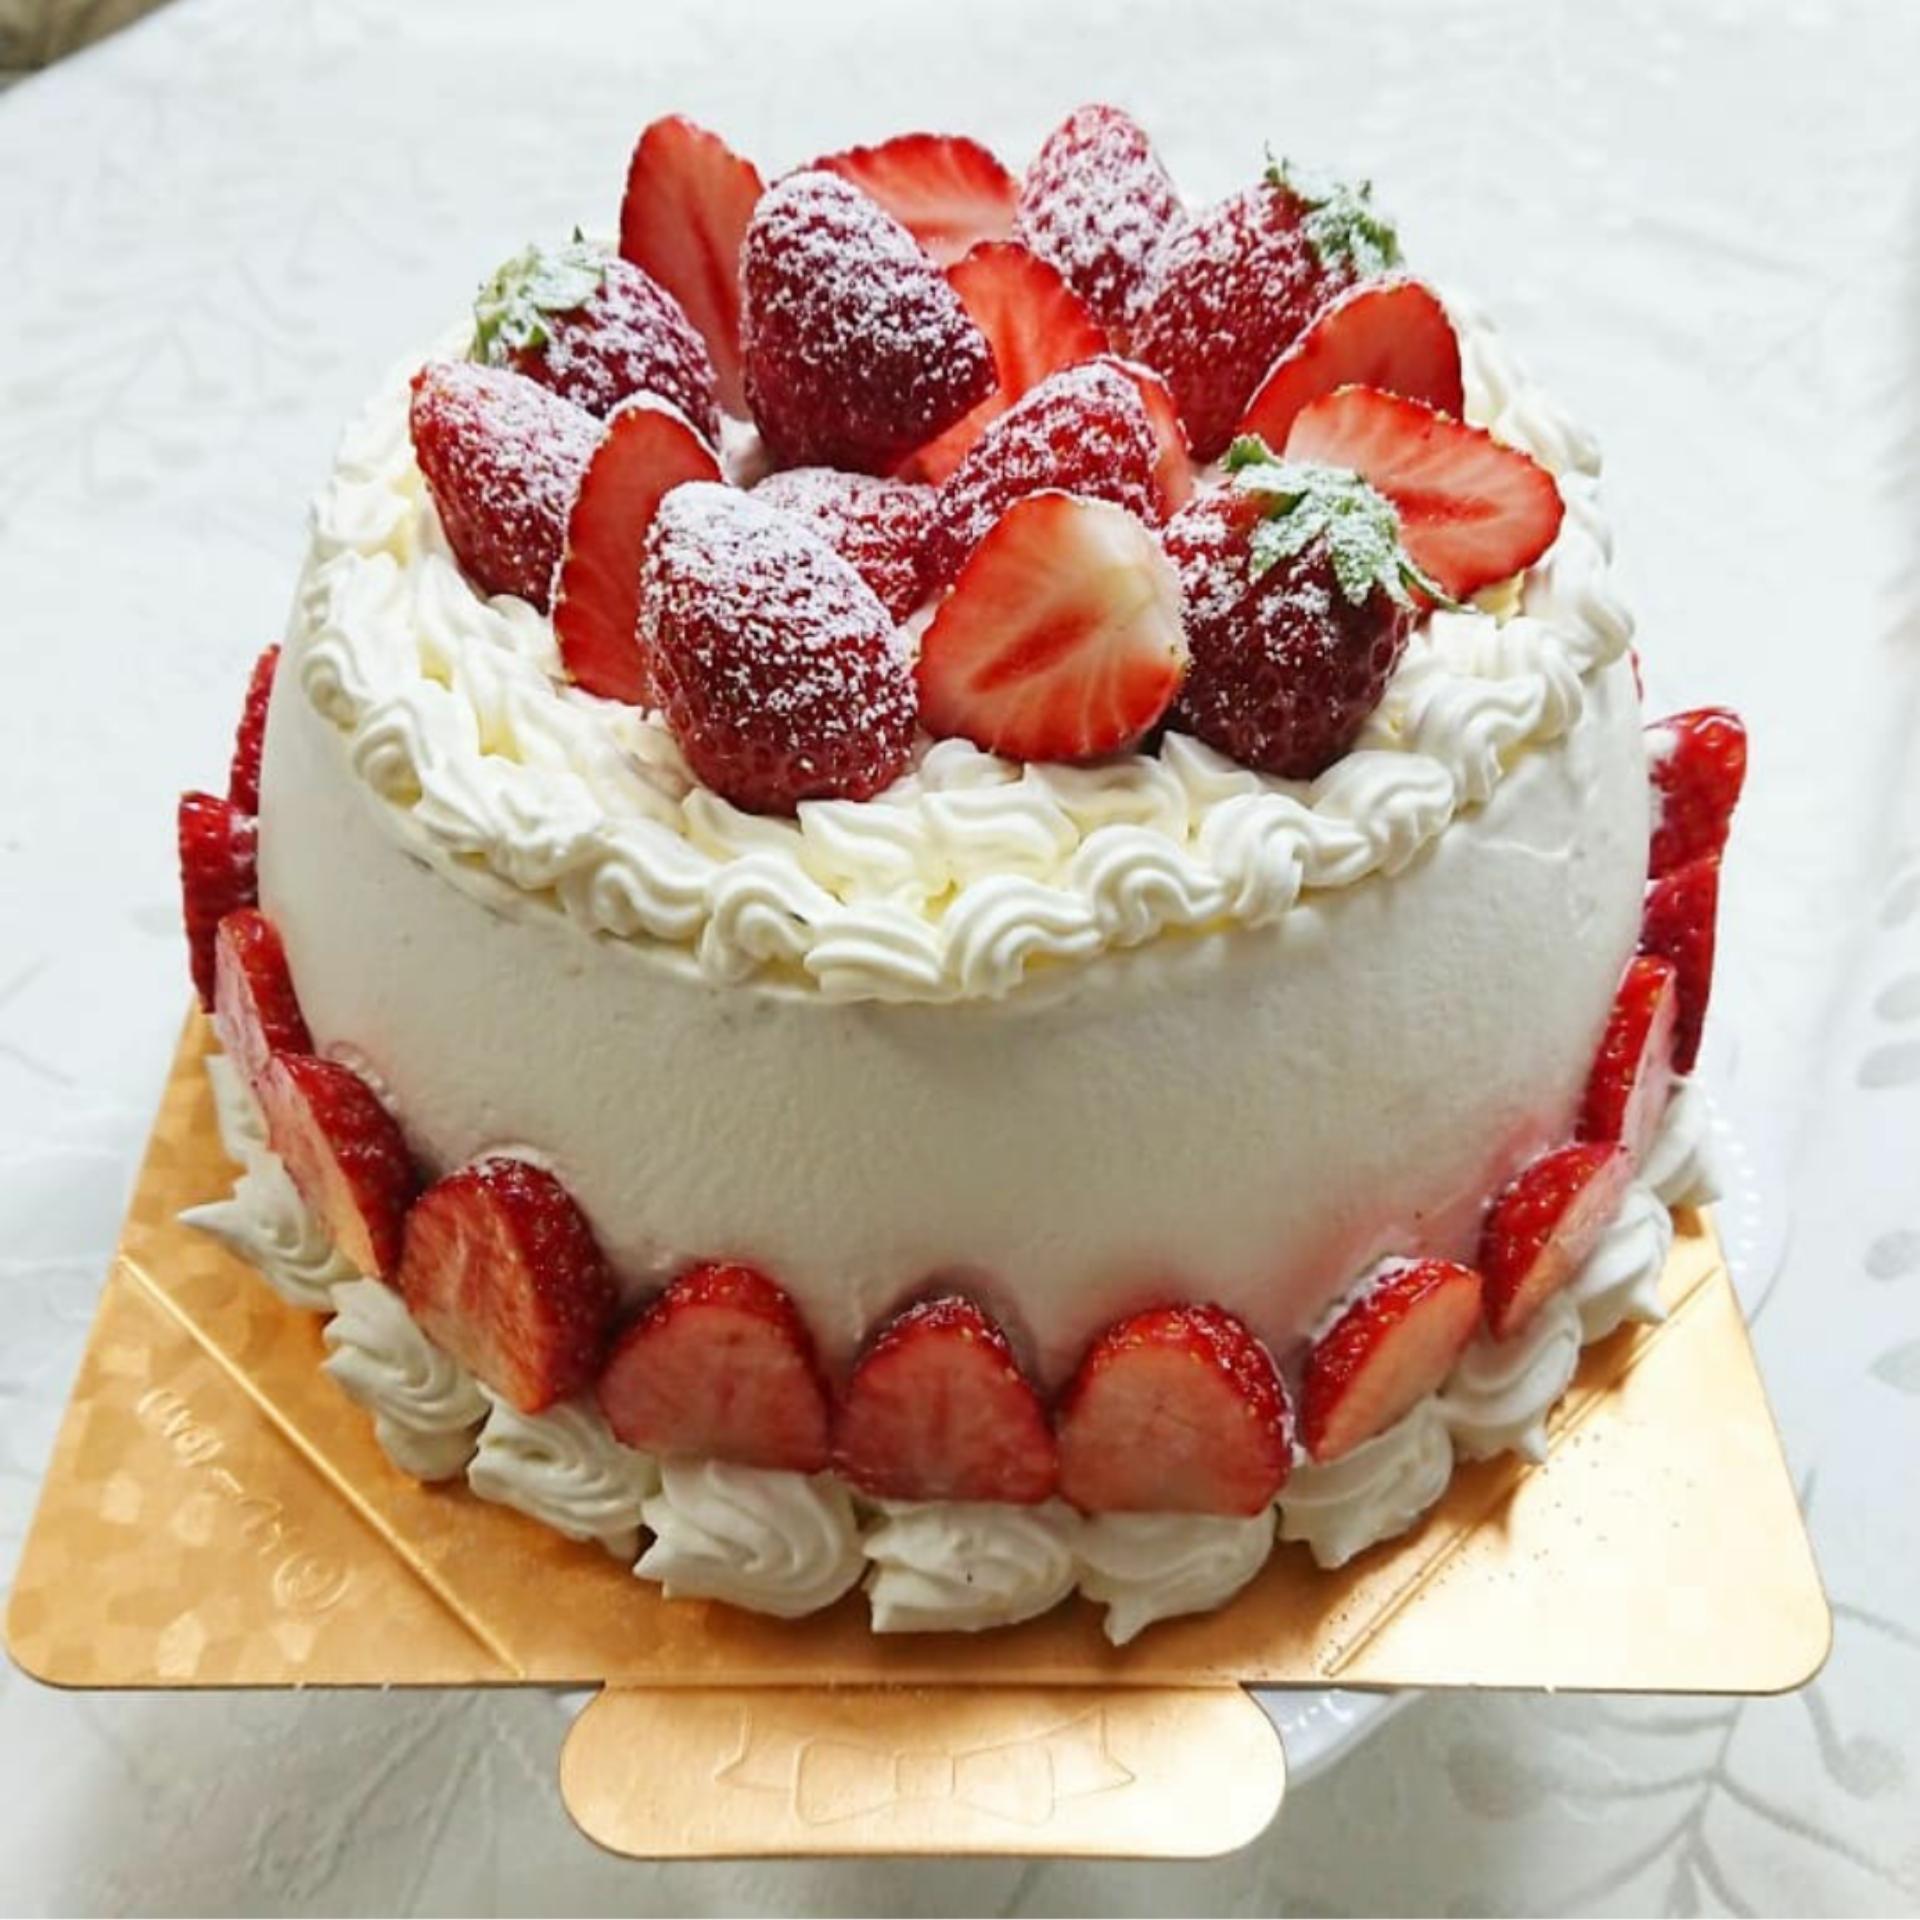 デコレーション シフォン ケーキ イメージケーキと料理